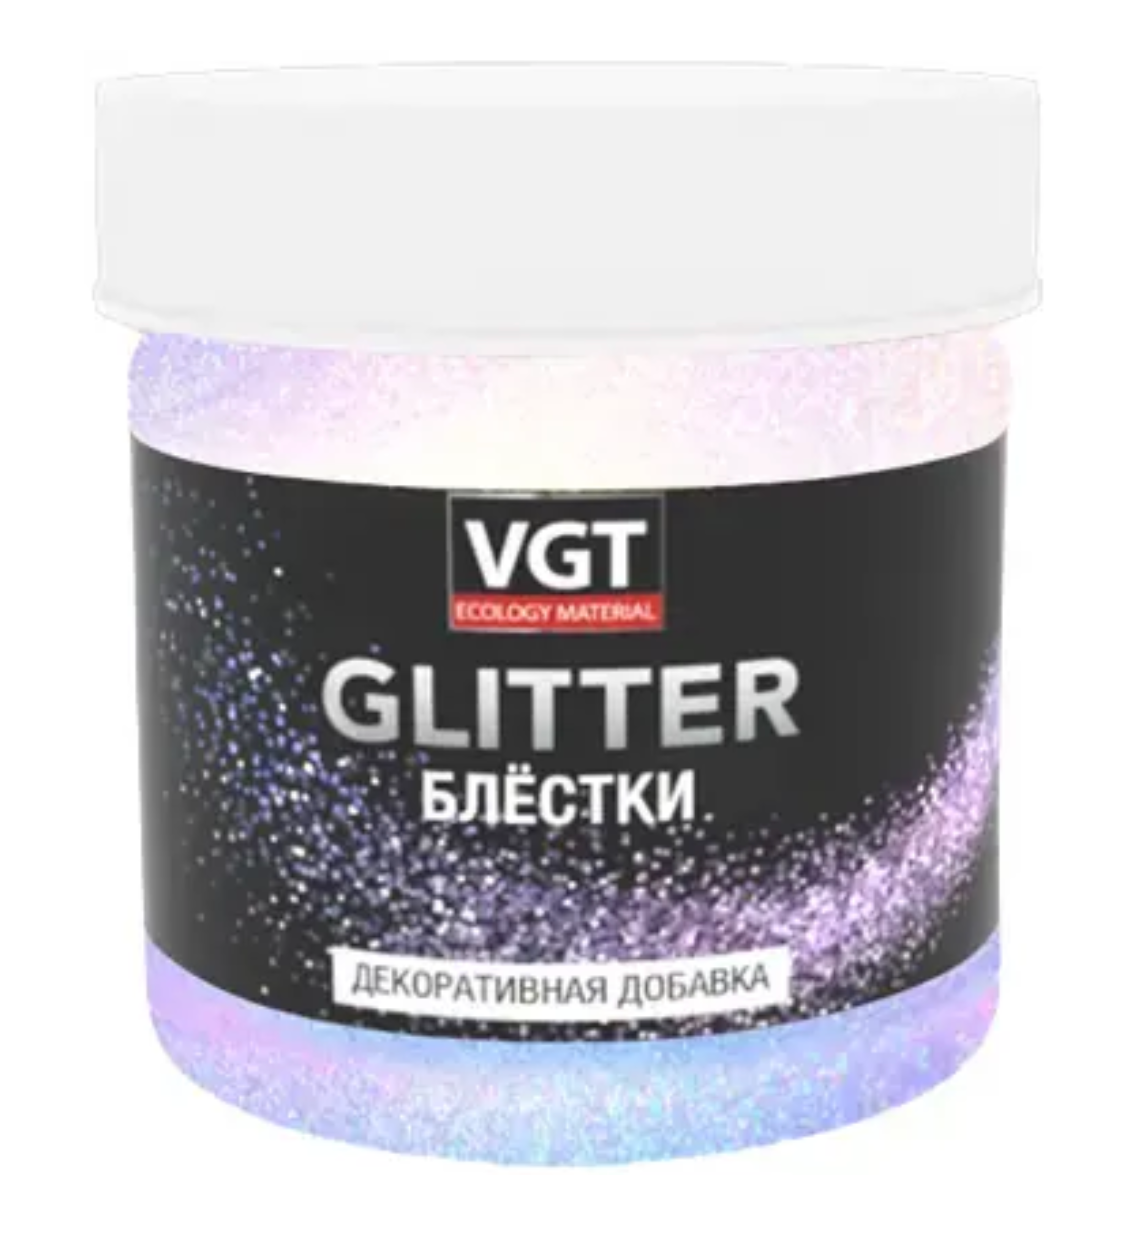 Блестки декоративная добавка (50 г) хамелеон VGT Glitter